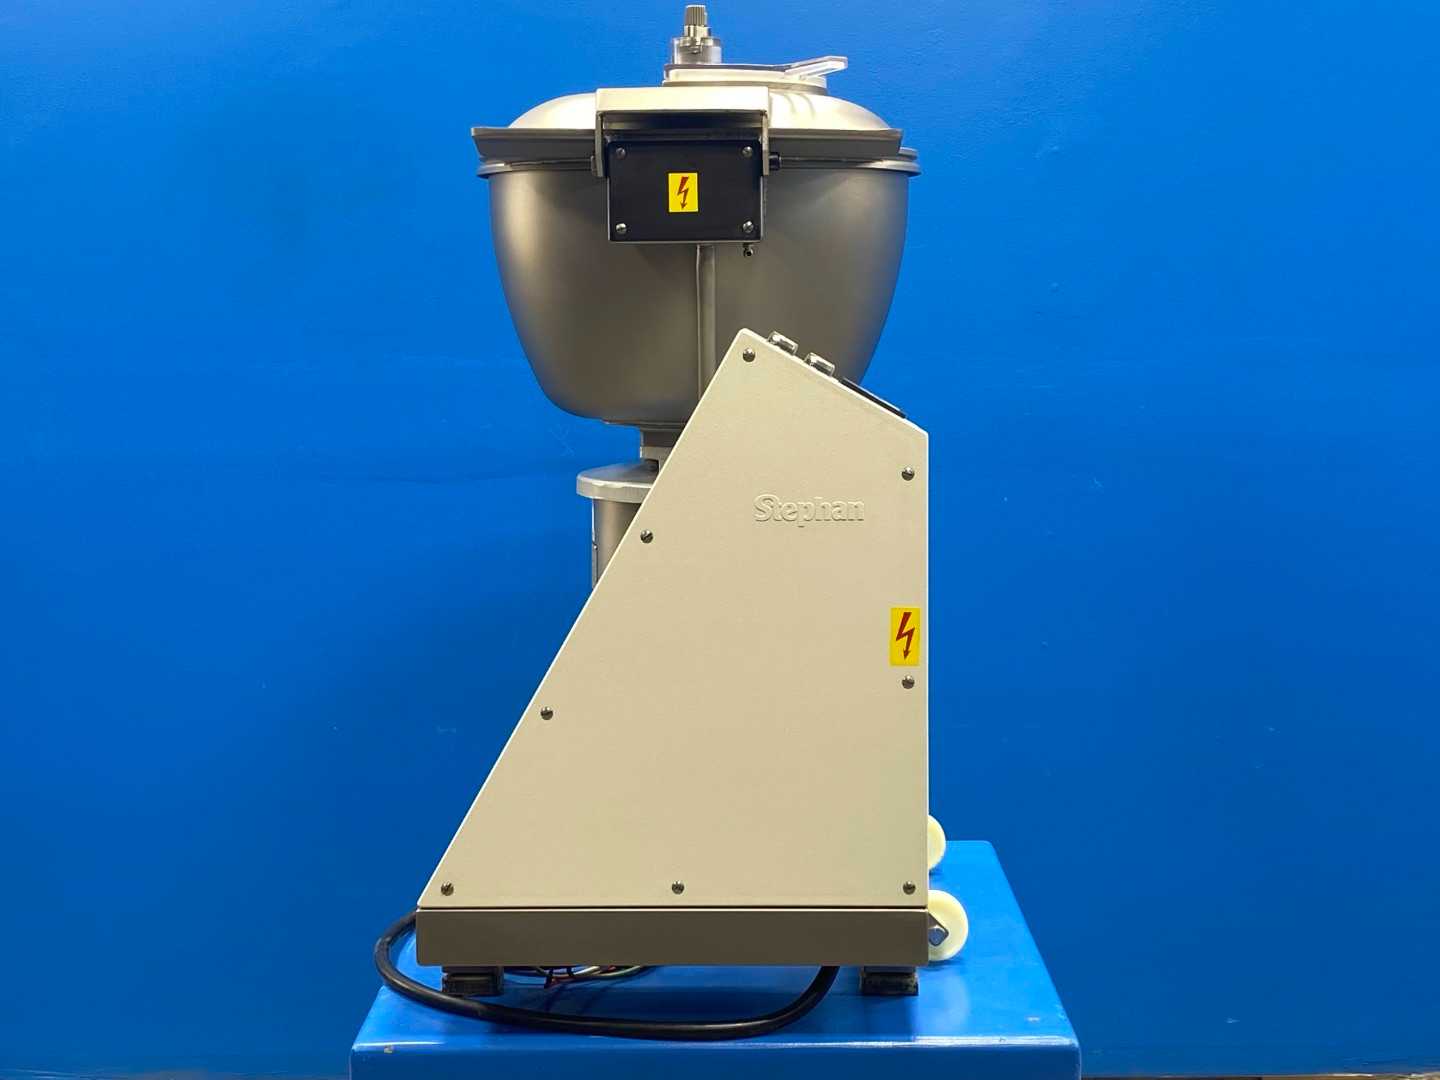 Stephan VCM-44 Vertical Cutter Mixer D